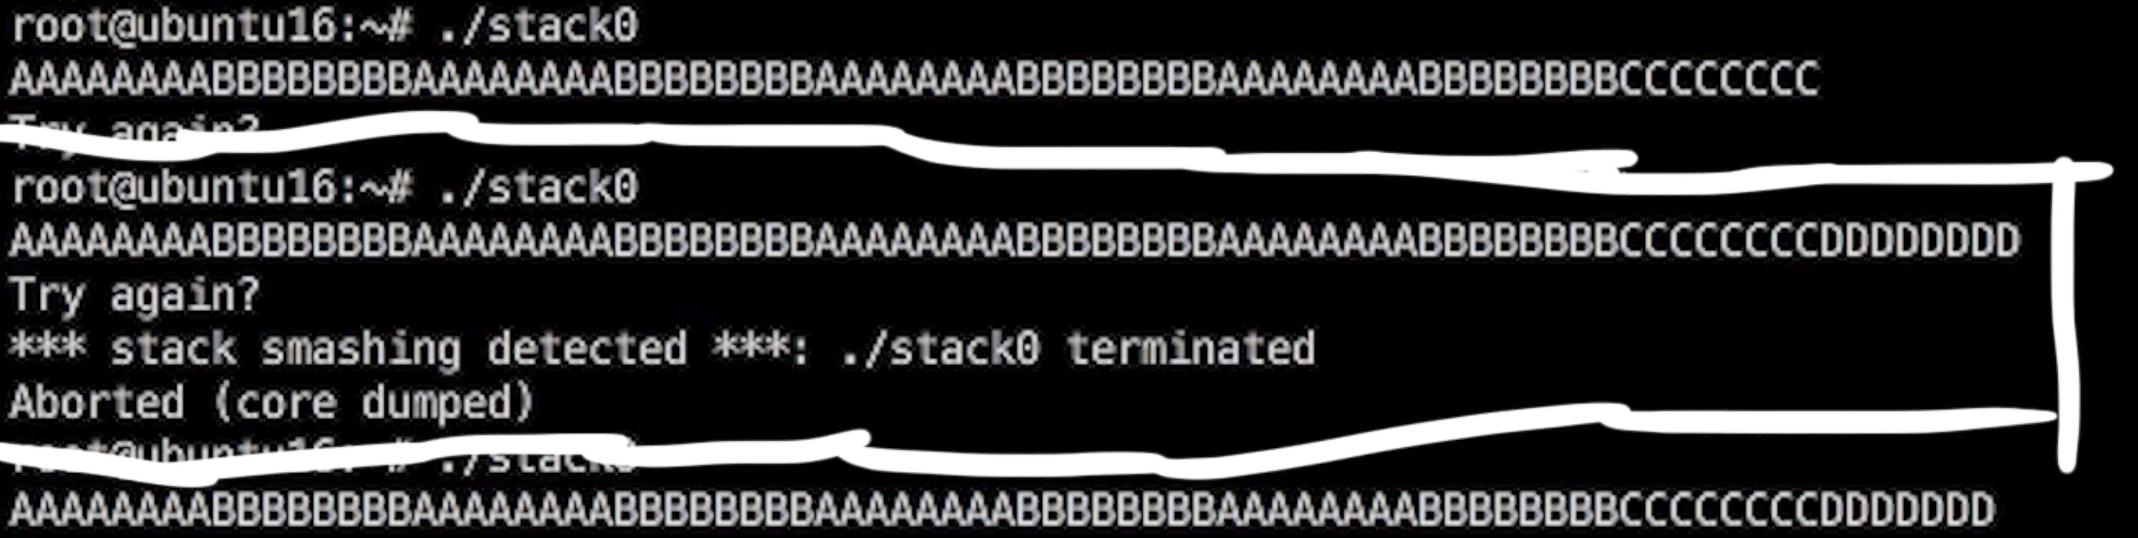 Stack Smashing Detected